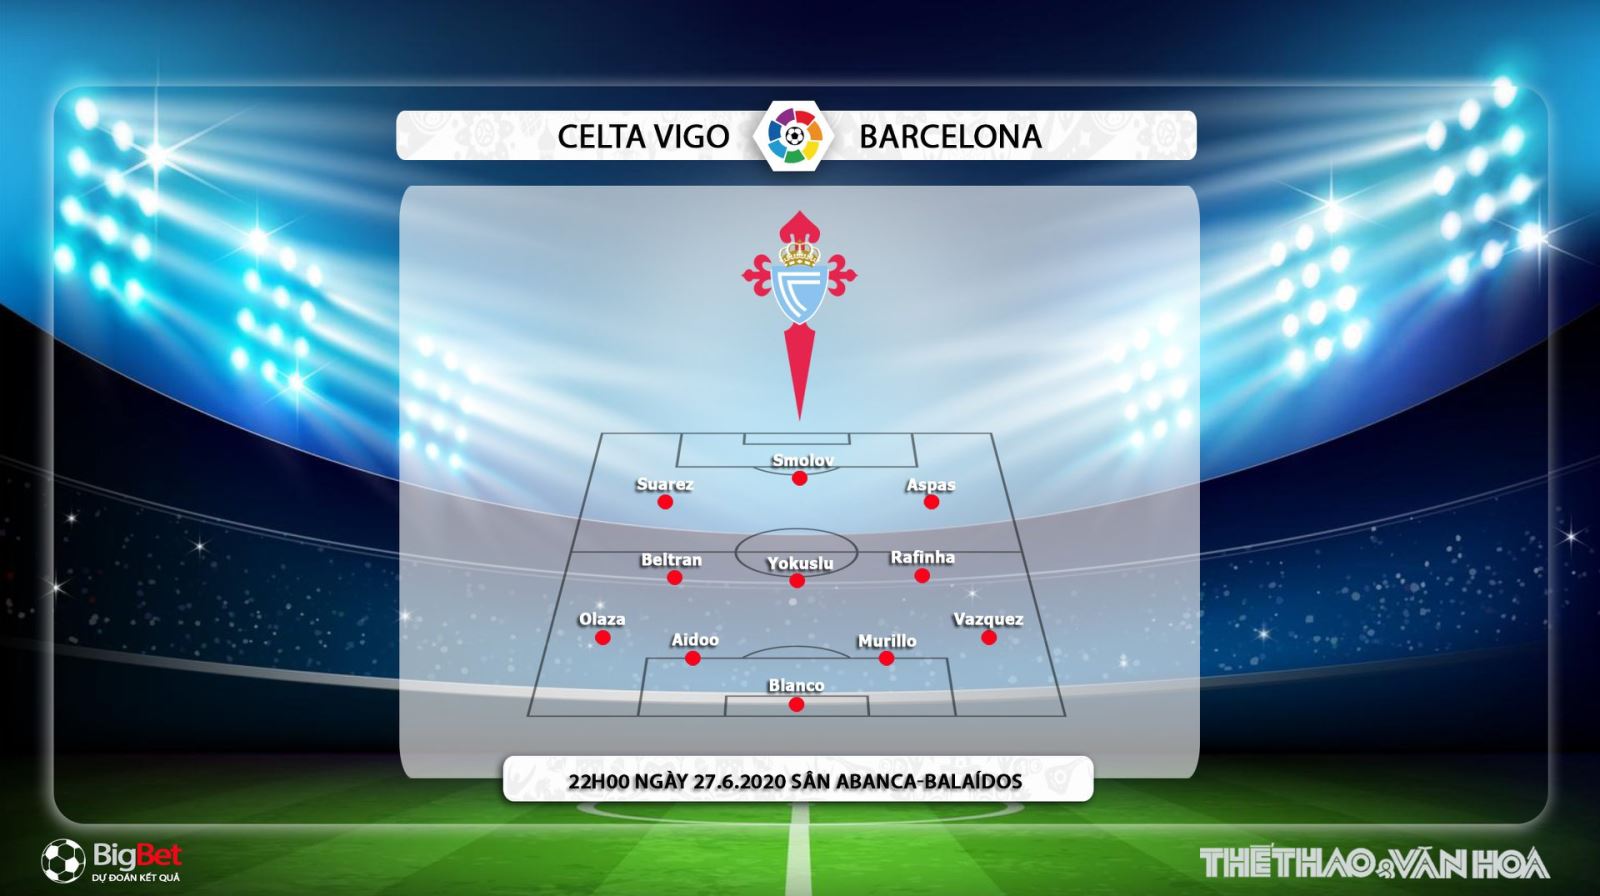 Chú thích Celta Vigo vs Barcelona, Barcelona, Celta Vigo, trực tiếp bóng đá, bóng đá, lịch thi đấu, nhận định bóng đá, kèo bóng đá